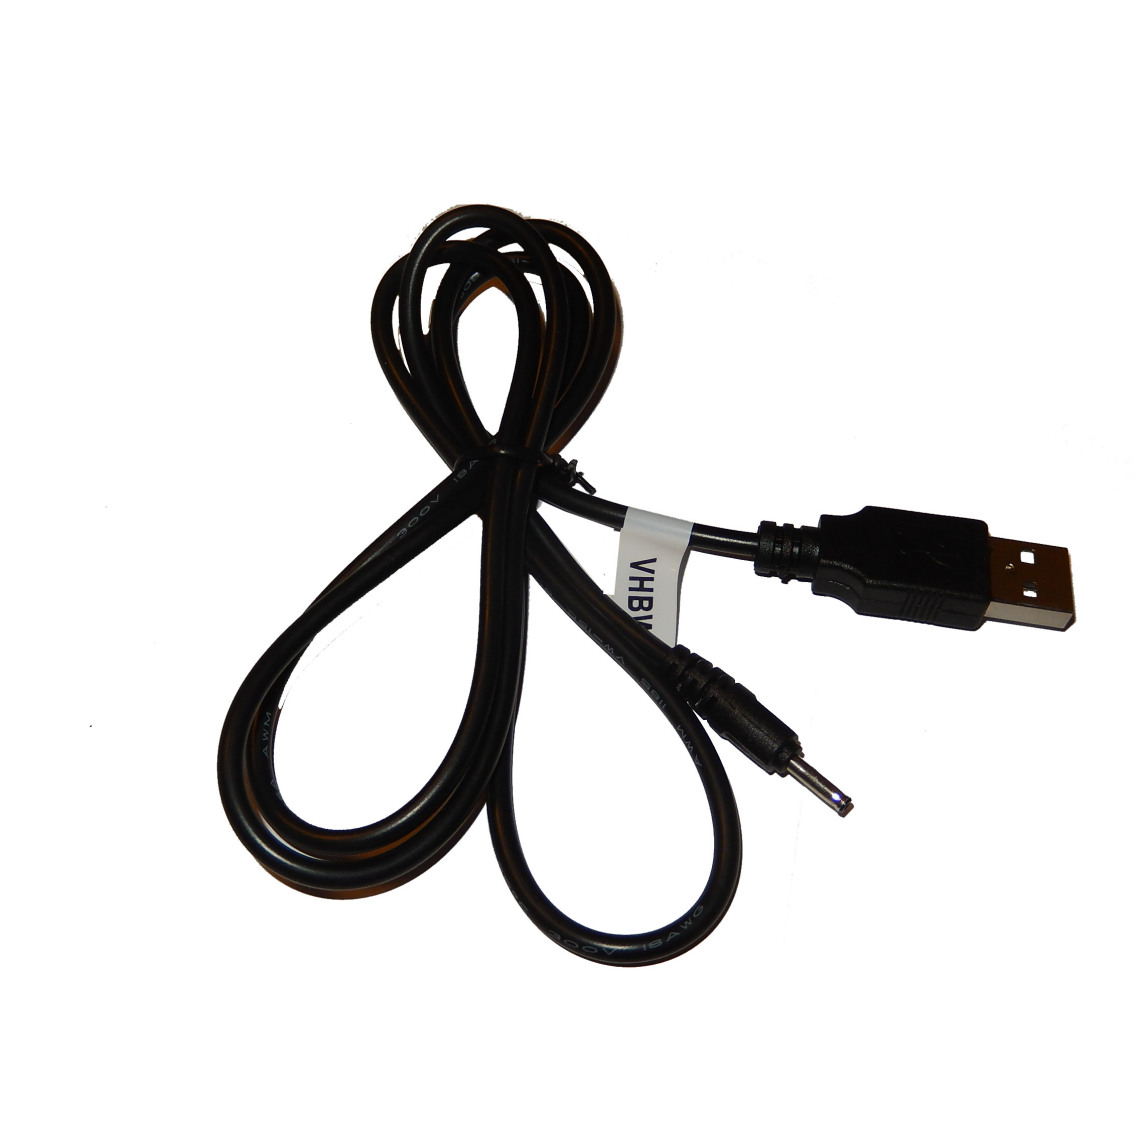 Vhbw - vhbw USB Chargeur câble de données l pour Flytouch 3, Flytouch 6, Flytouch 7, Superpad VI VII V10, Pipo S2, M1, Max M9, Max M9pro - Accessoires alimentation